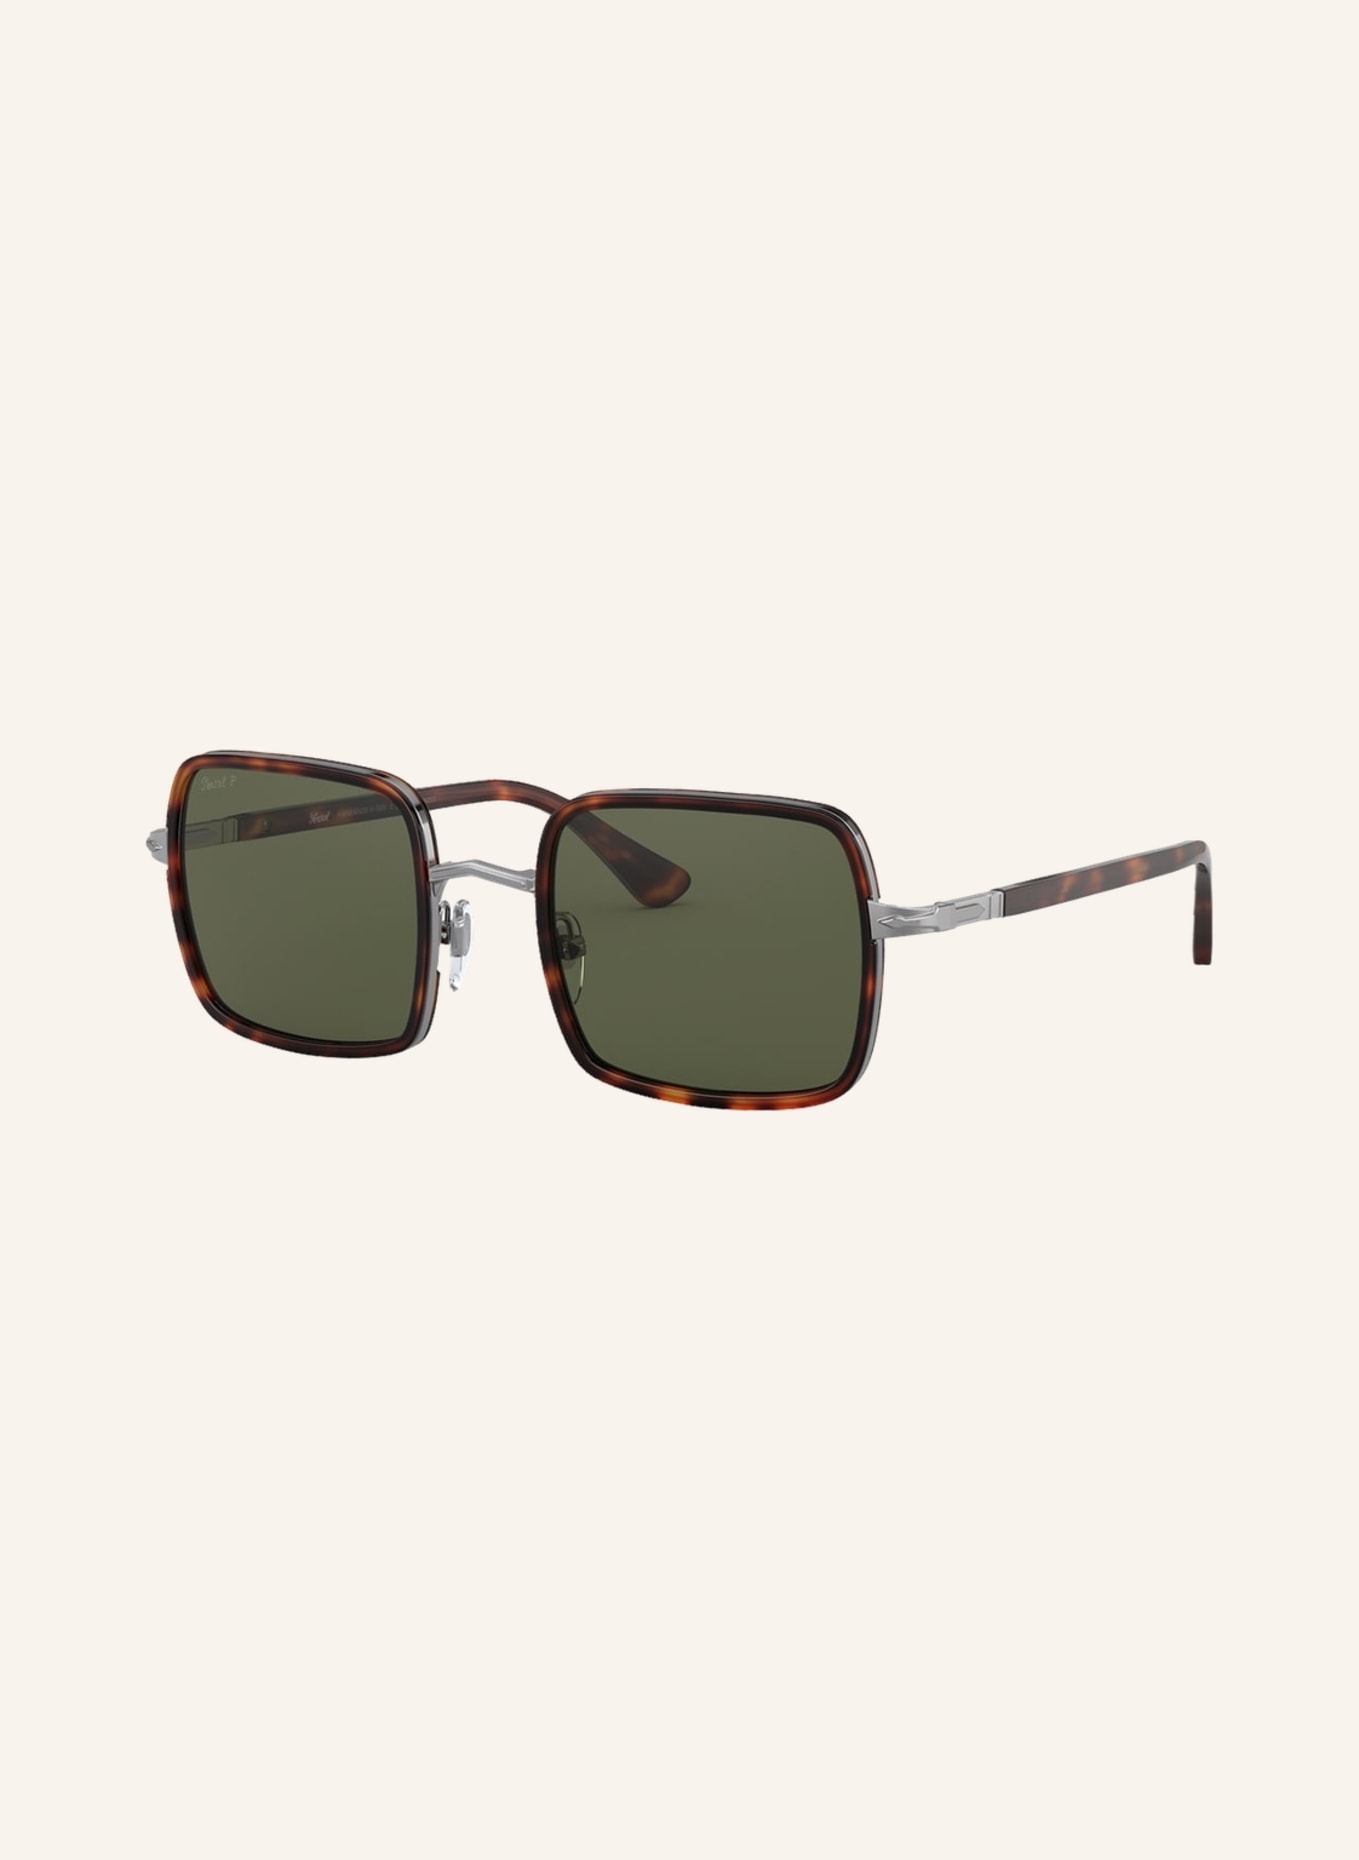 Persol Sunglasses PO2475S, Color: 513/58 - HAVANA/GREEN POLARIZED (Image 1)